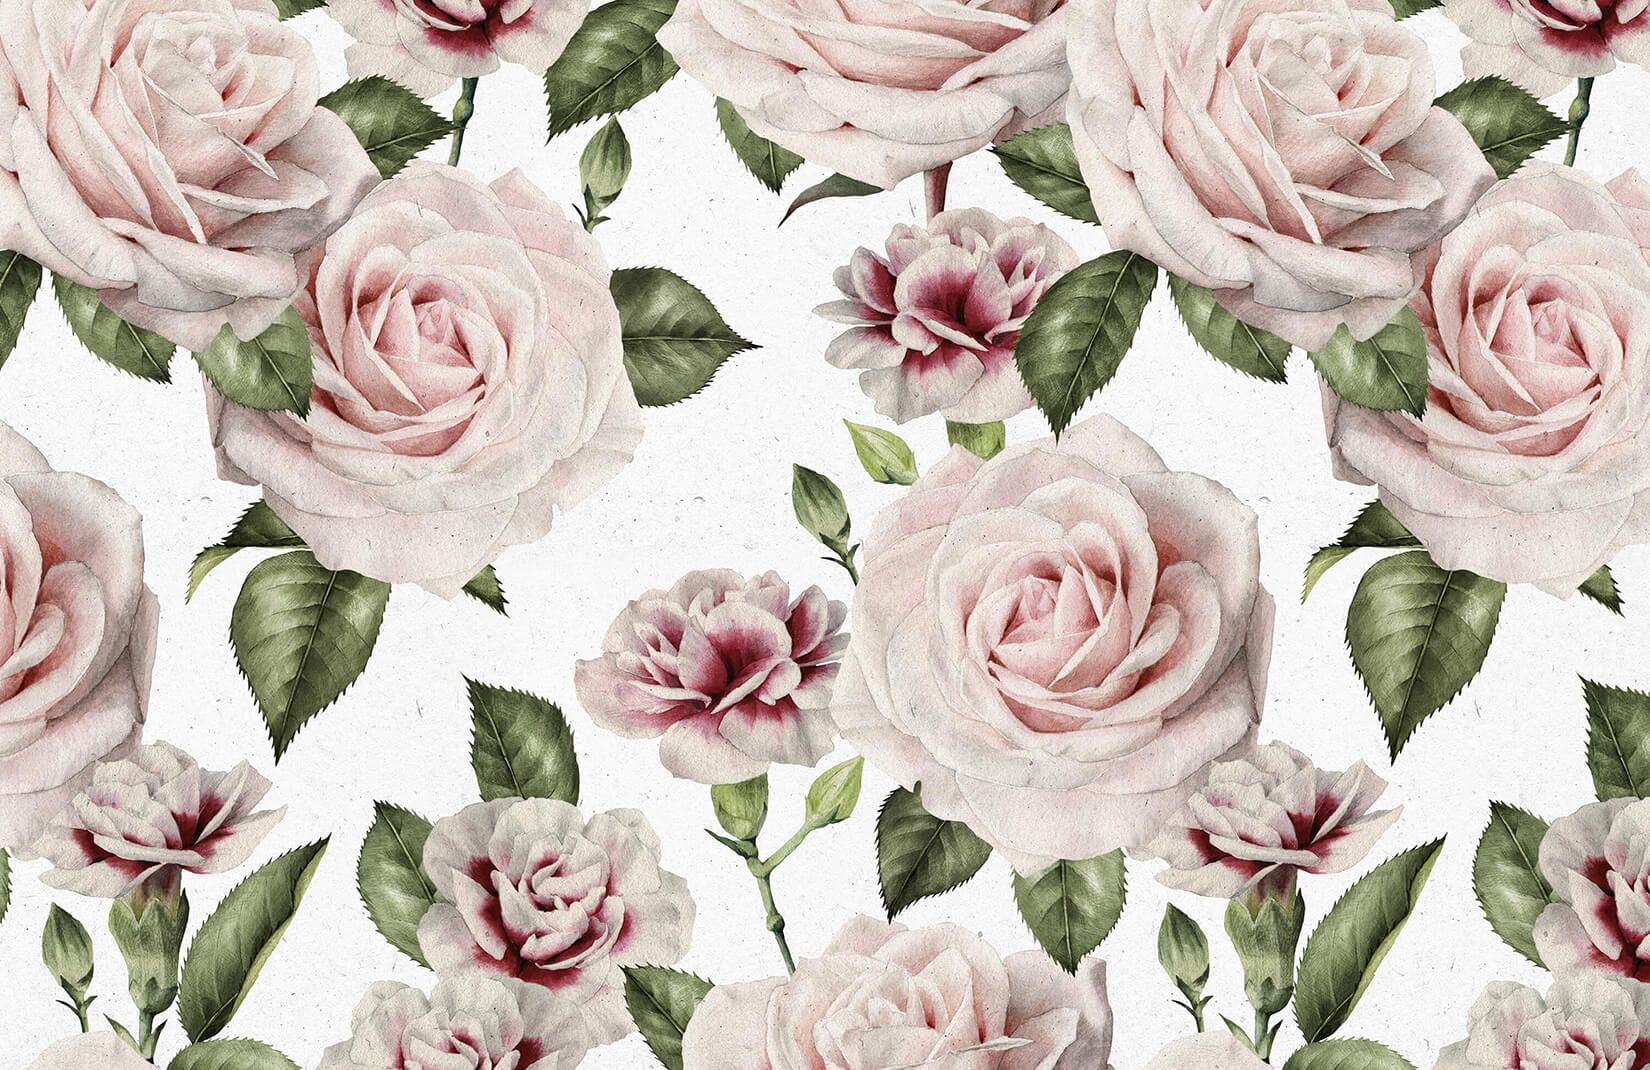 Vintage Rose Wallpapers K Hd Vintage Rose Backgrounds On Wallpaperbat